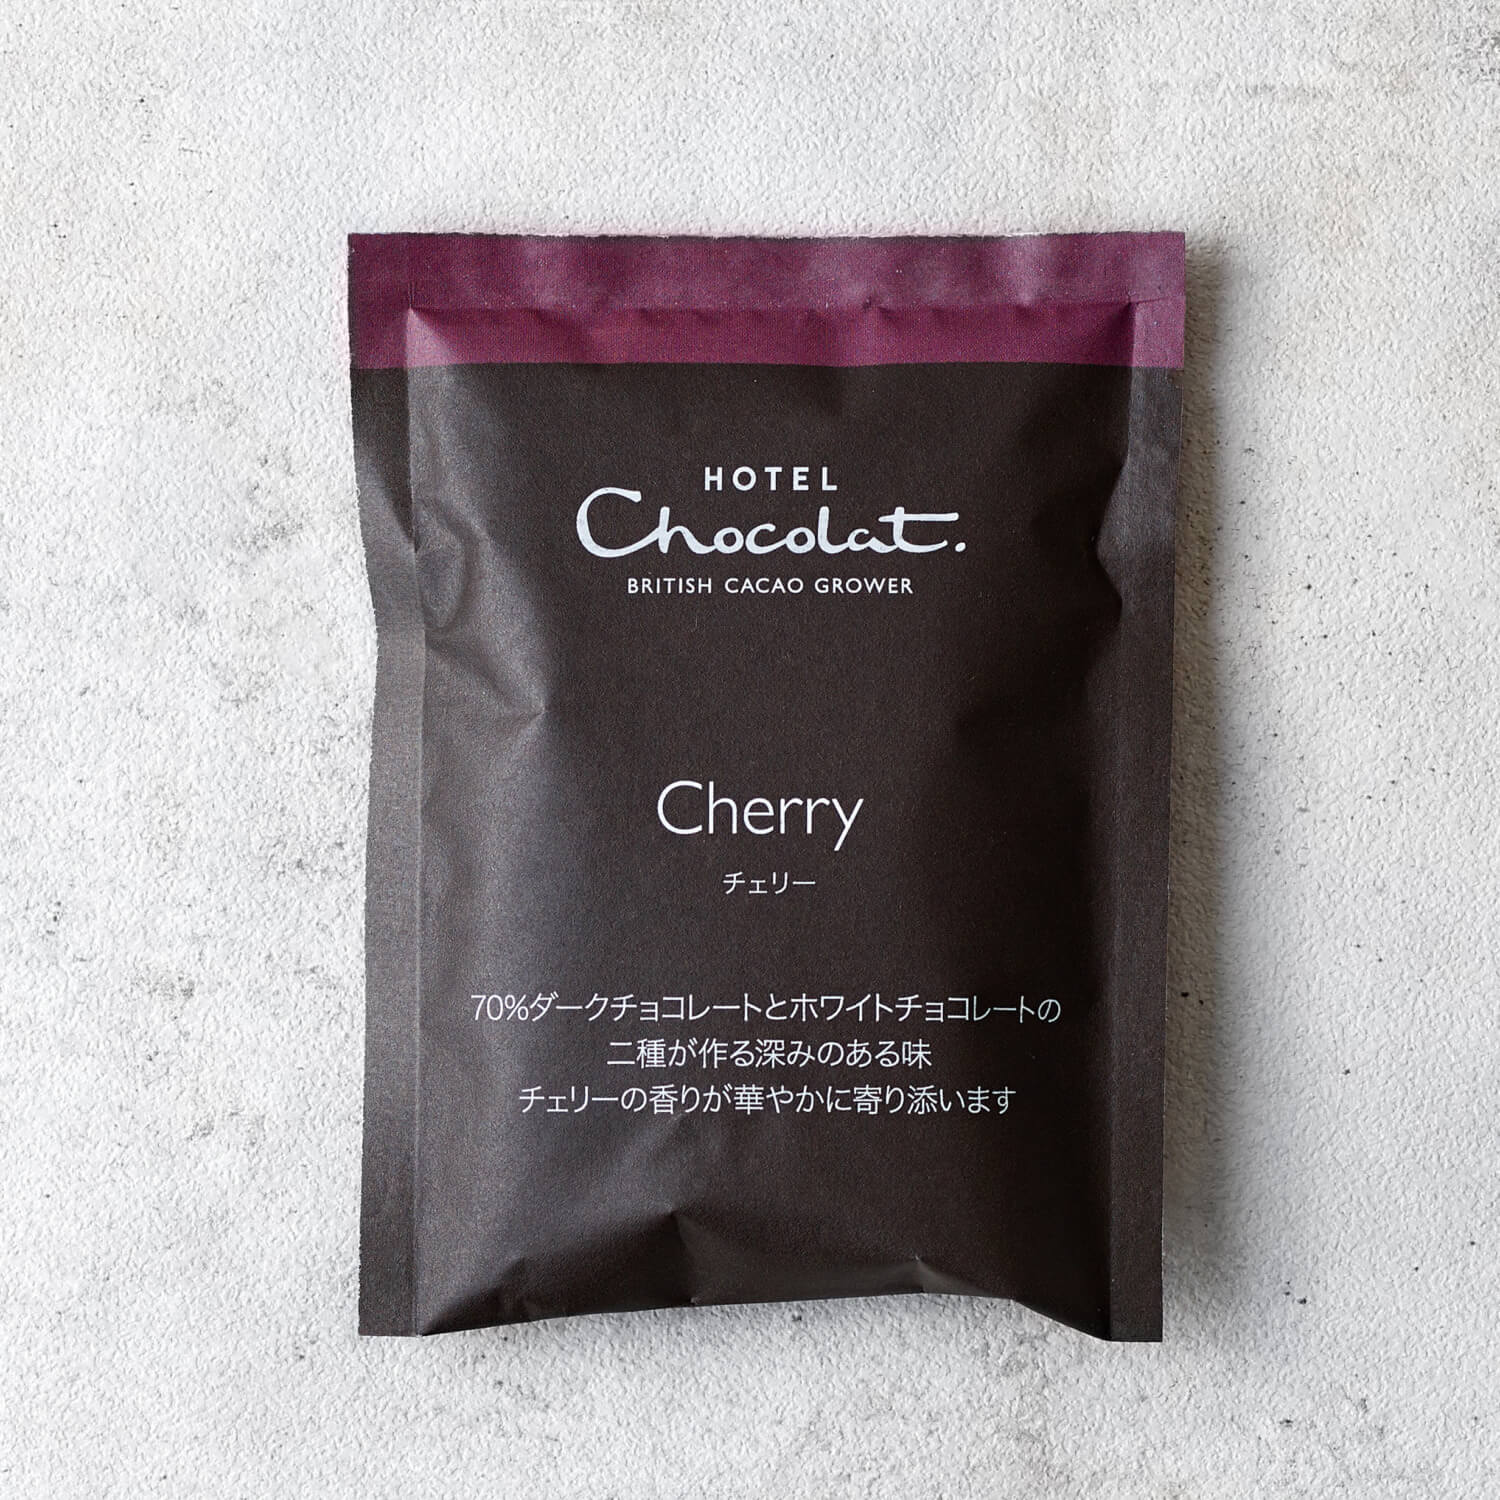 『ベルべタイザー』専用チョコレートフレークの限定フレーバー『Cherry (チェリー)』